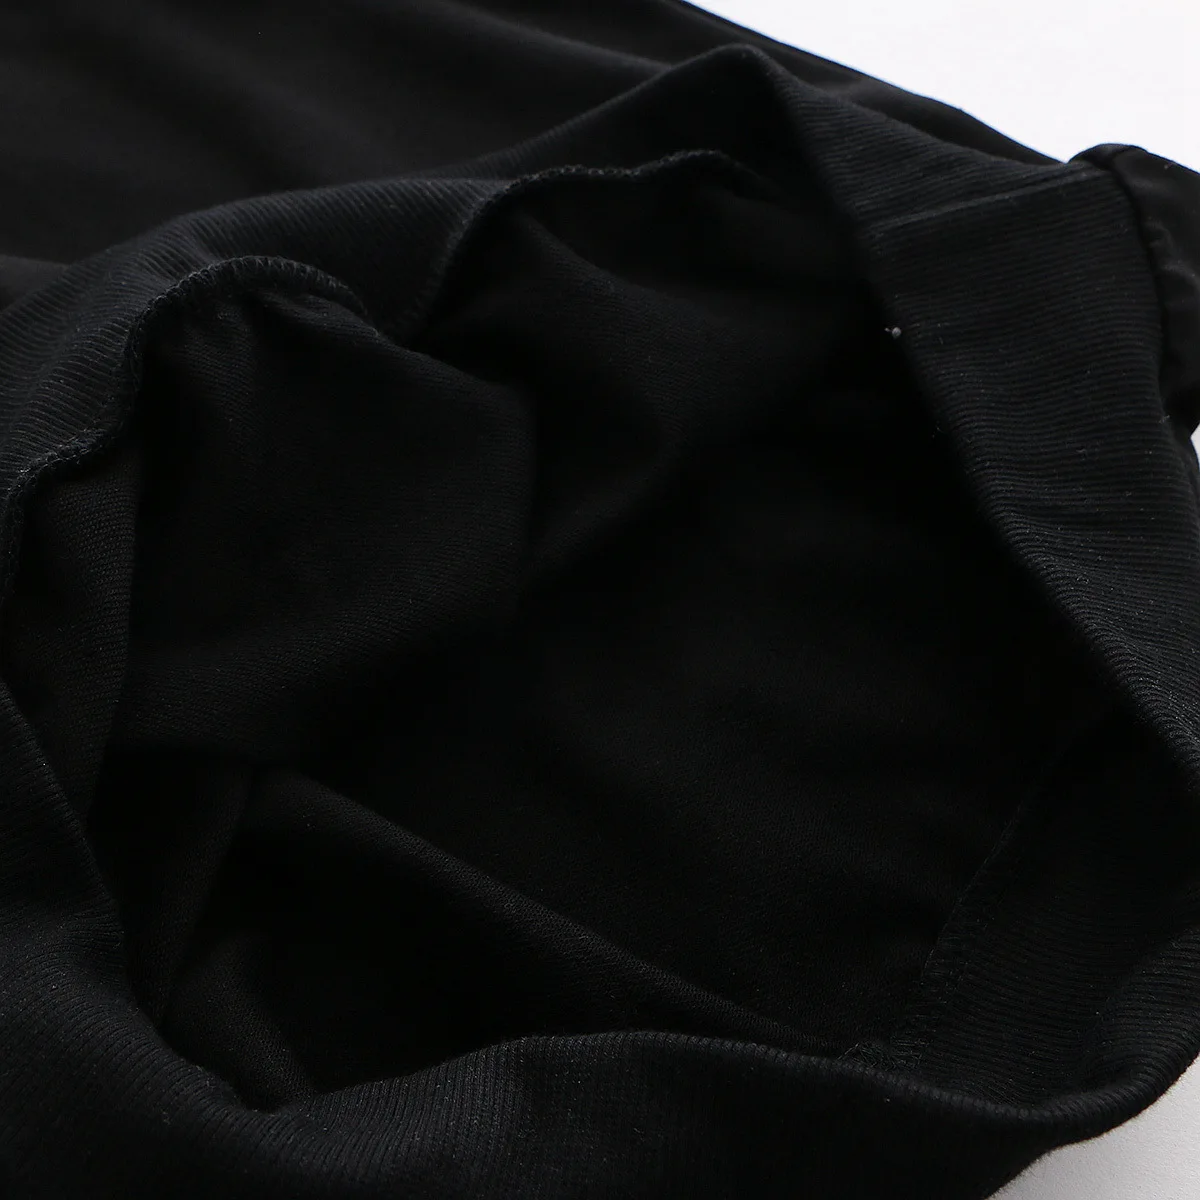 Милые каваи эльф вышивка белый черный толстовки Harajuku Лолита японский стиль уха с капюшоном пальто женская одежда 2019 Новая Женская